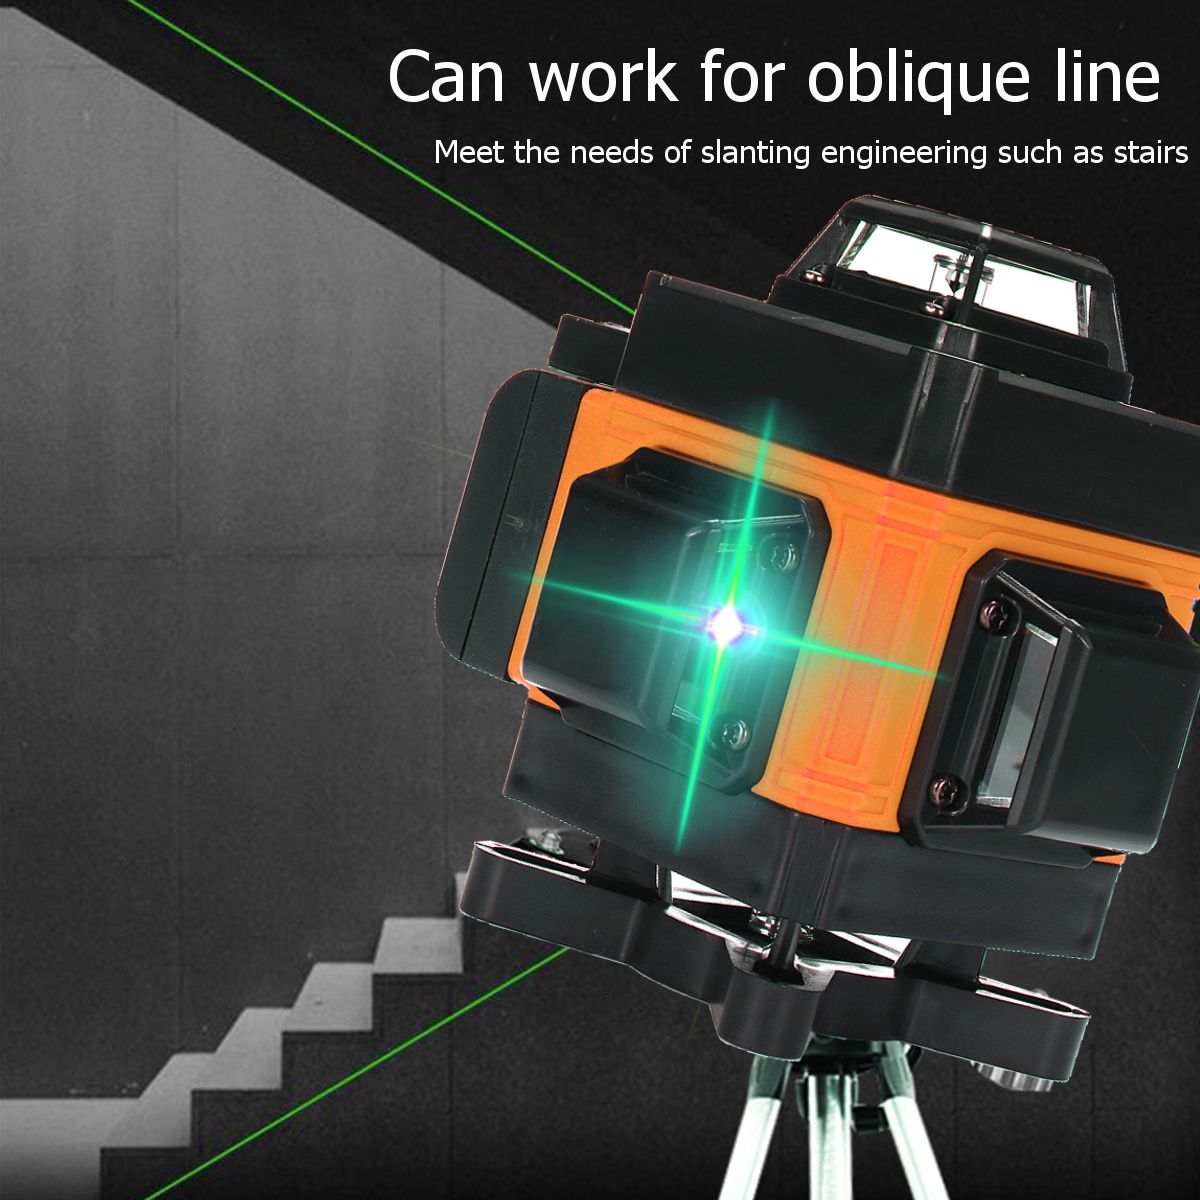 16-Lines-3D-360deg-Green-Laser-Level-Self-Leveling-Cross-Line-Horizontal-LCD-Tool-1714972